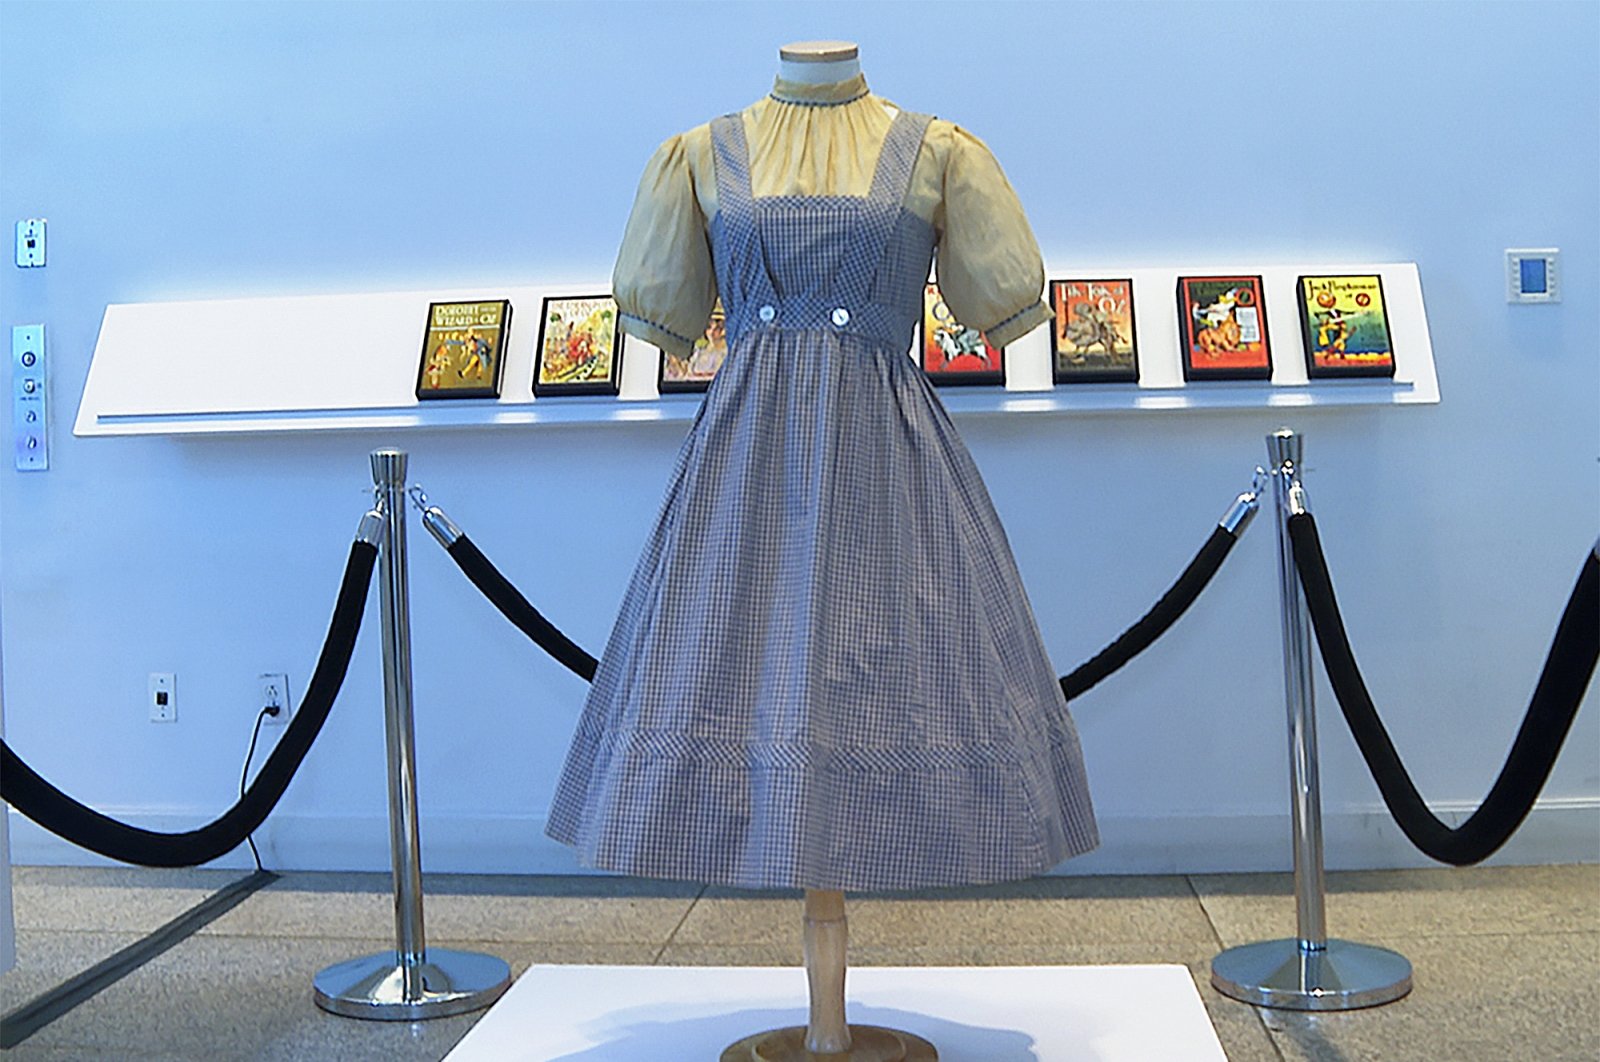 Hakim menghentikan lelang gaun Dorothy yang hilang dari ‘The Wizard of Oz’